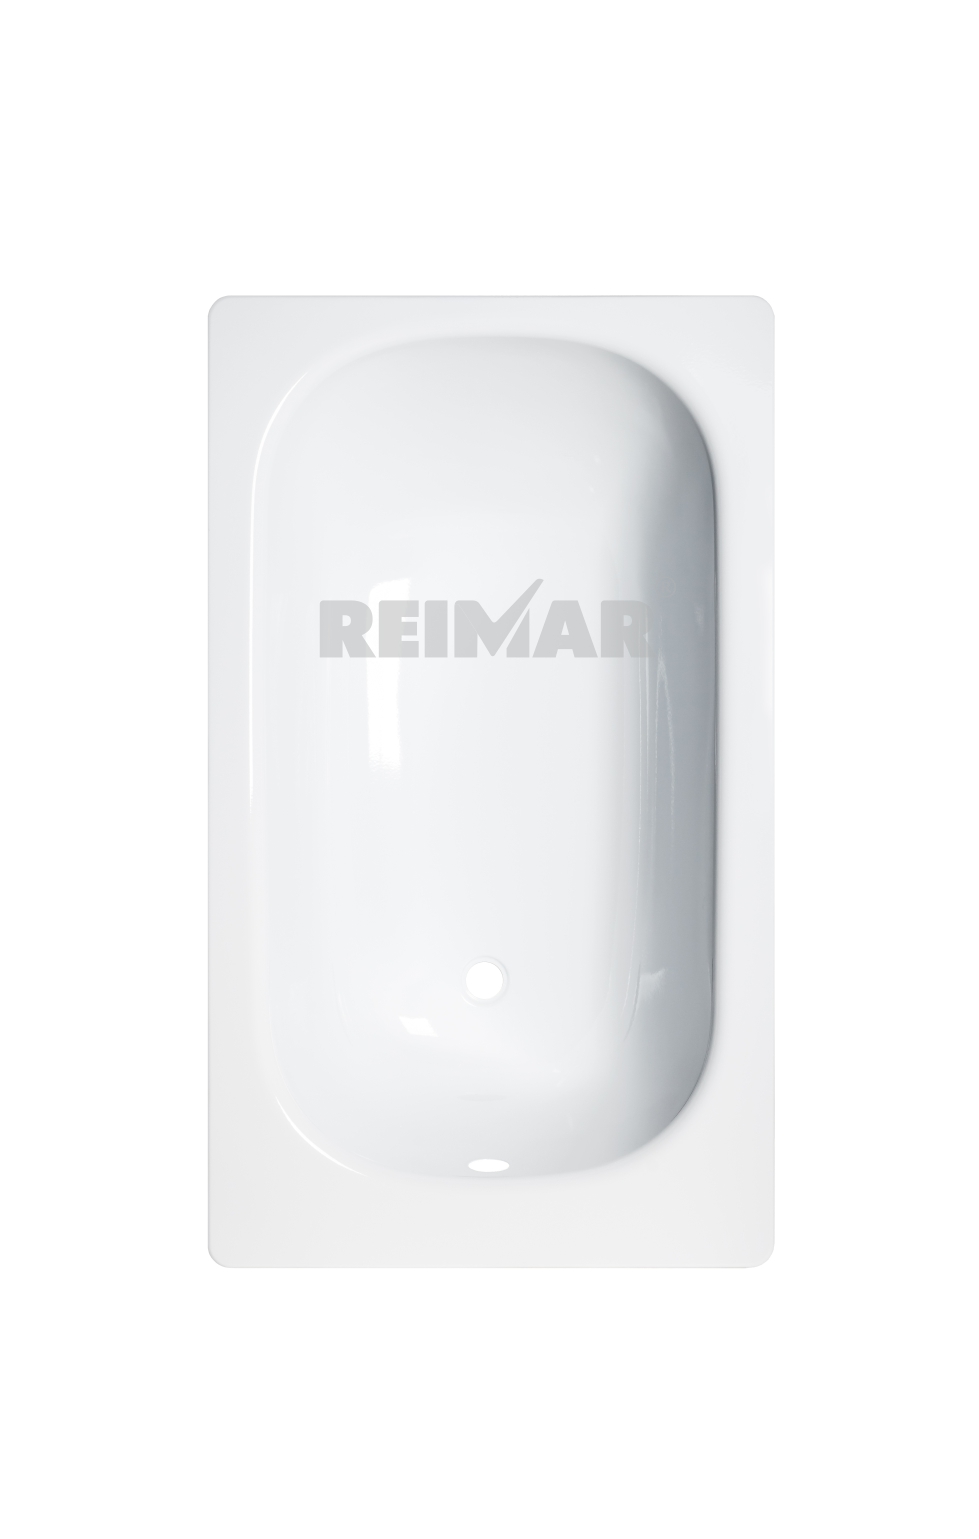 ванна стальная ВИЗ Reimar 1200х700 (R-24901) эмал. с опорной подставкой ОР-21205